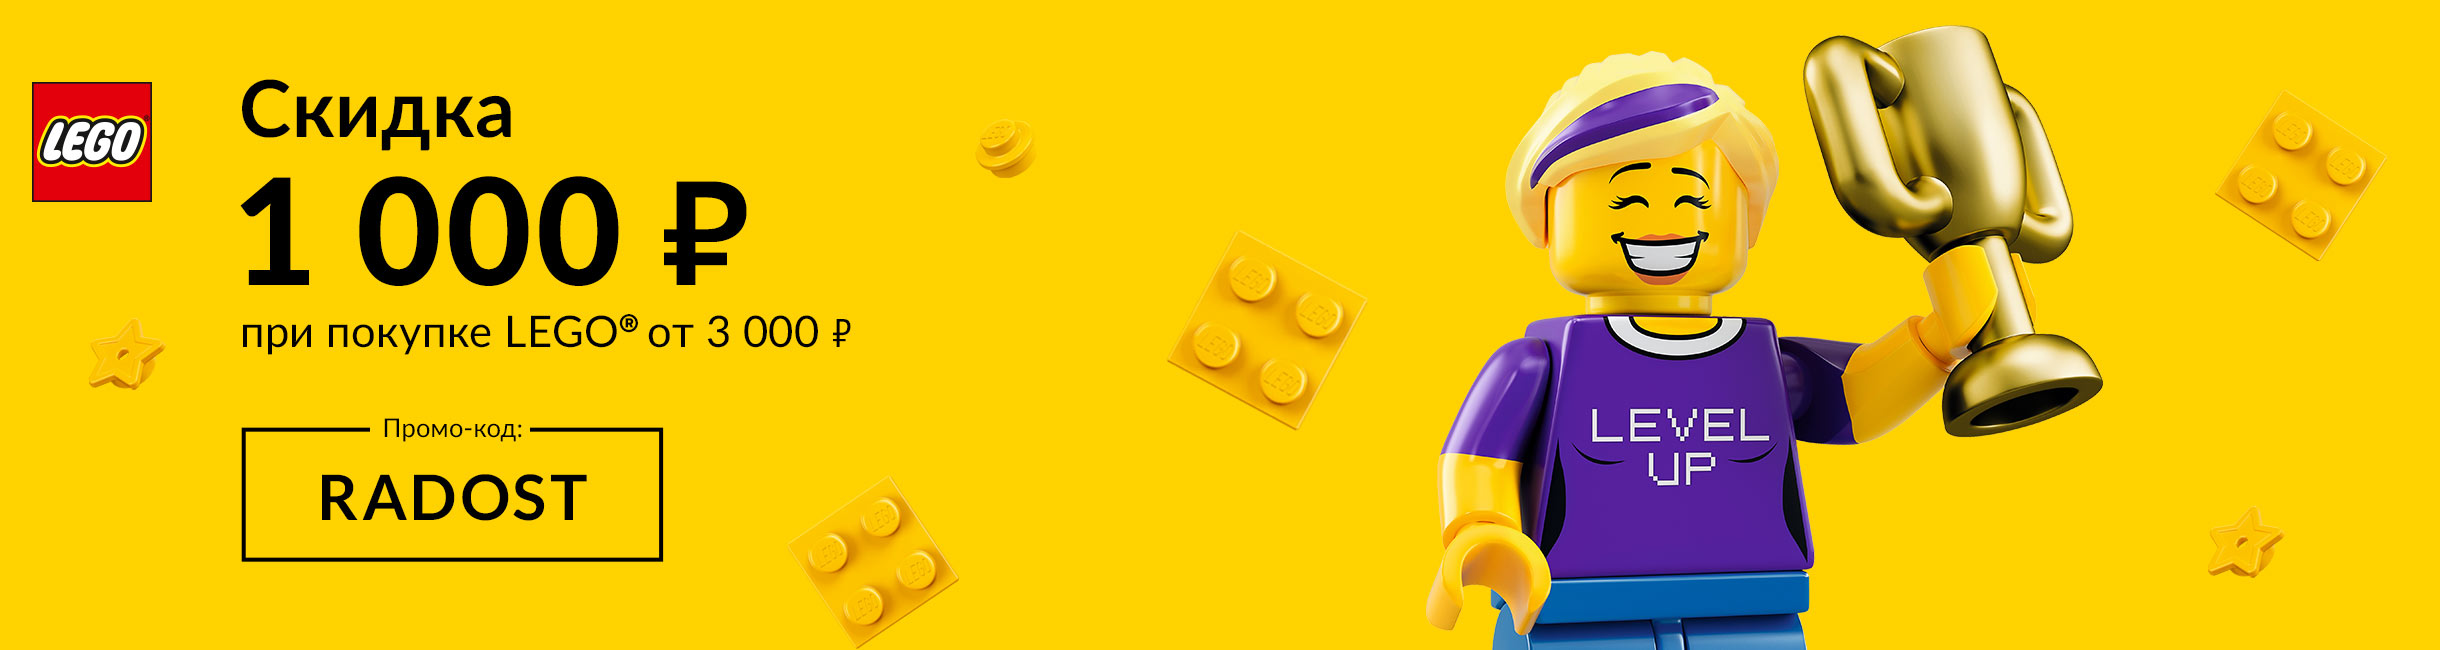 Рекламная акция Лего (LEGO) «RADOST с LEGO в каждый дом!»